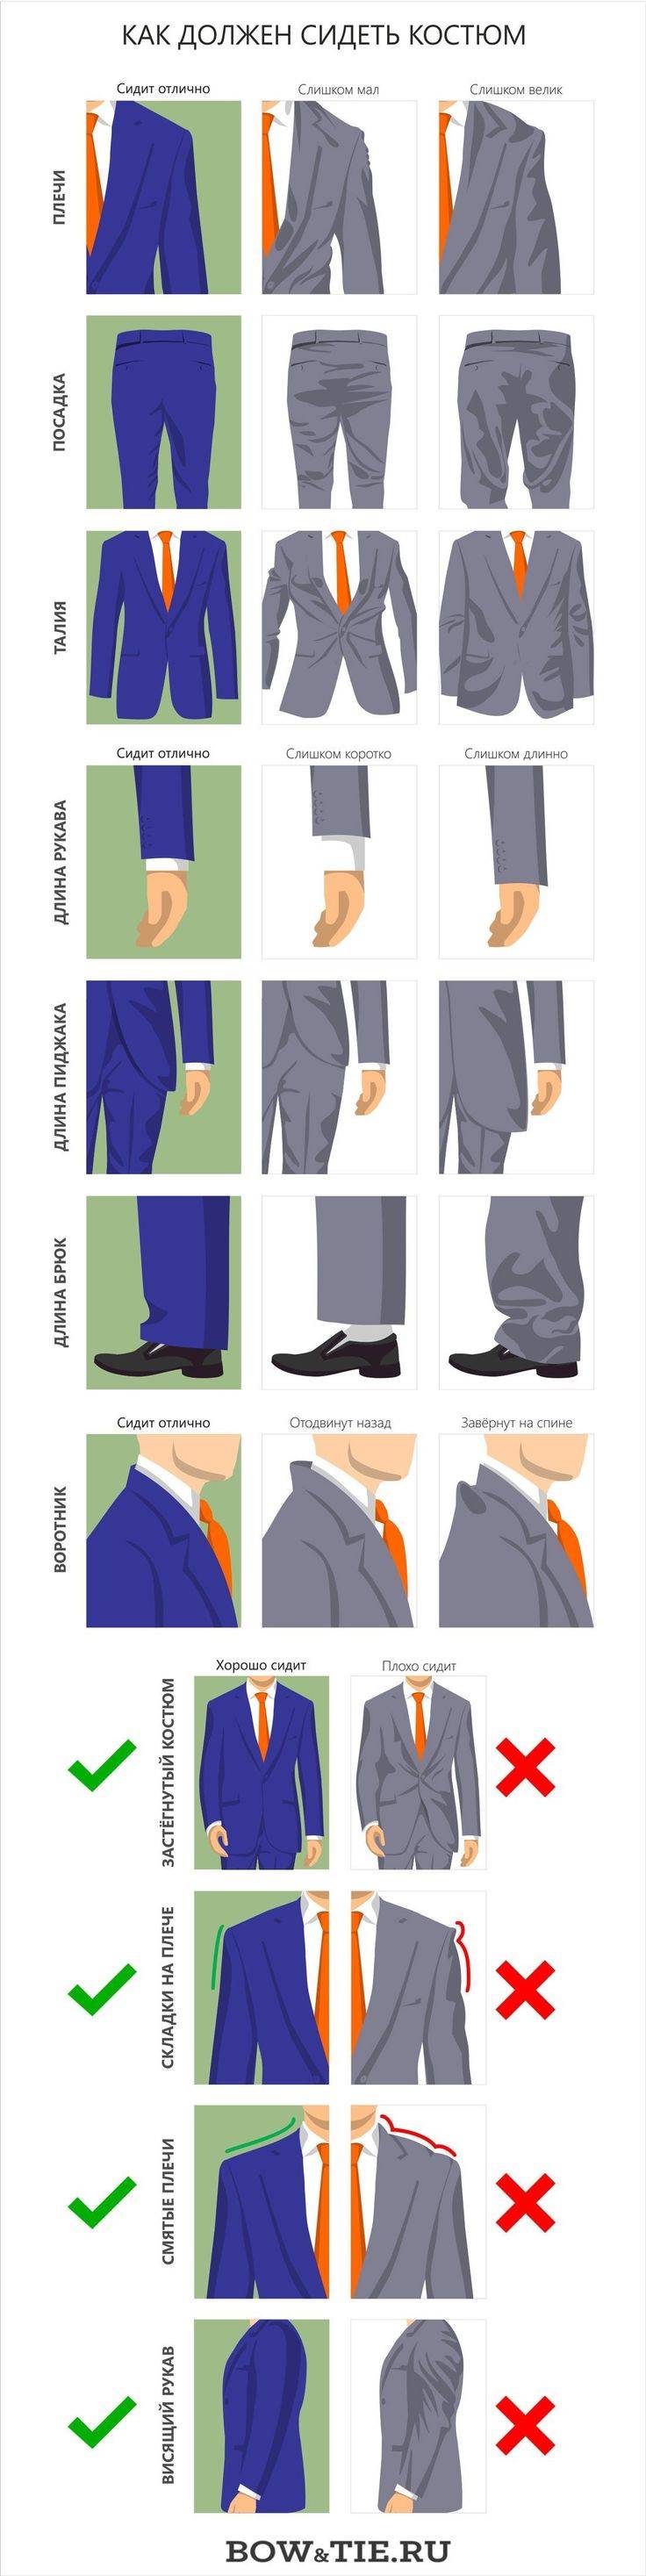 Длина пиджака мужского костюма: требования к длине, способы проверки подходящей длины art-textil.ru